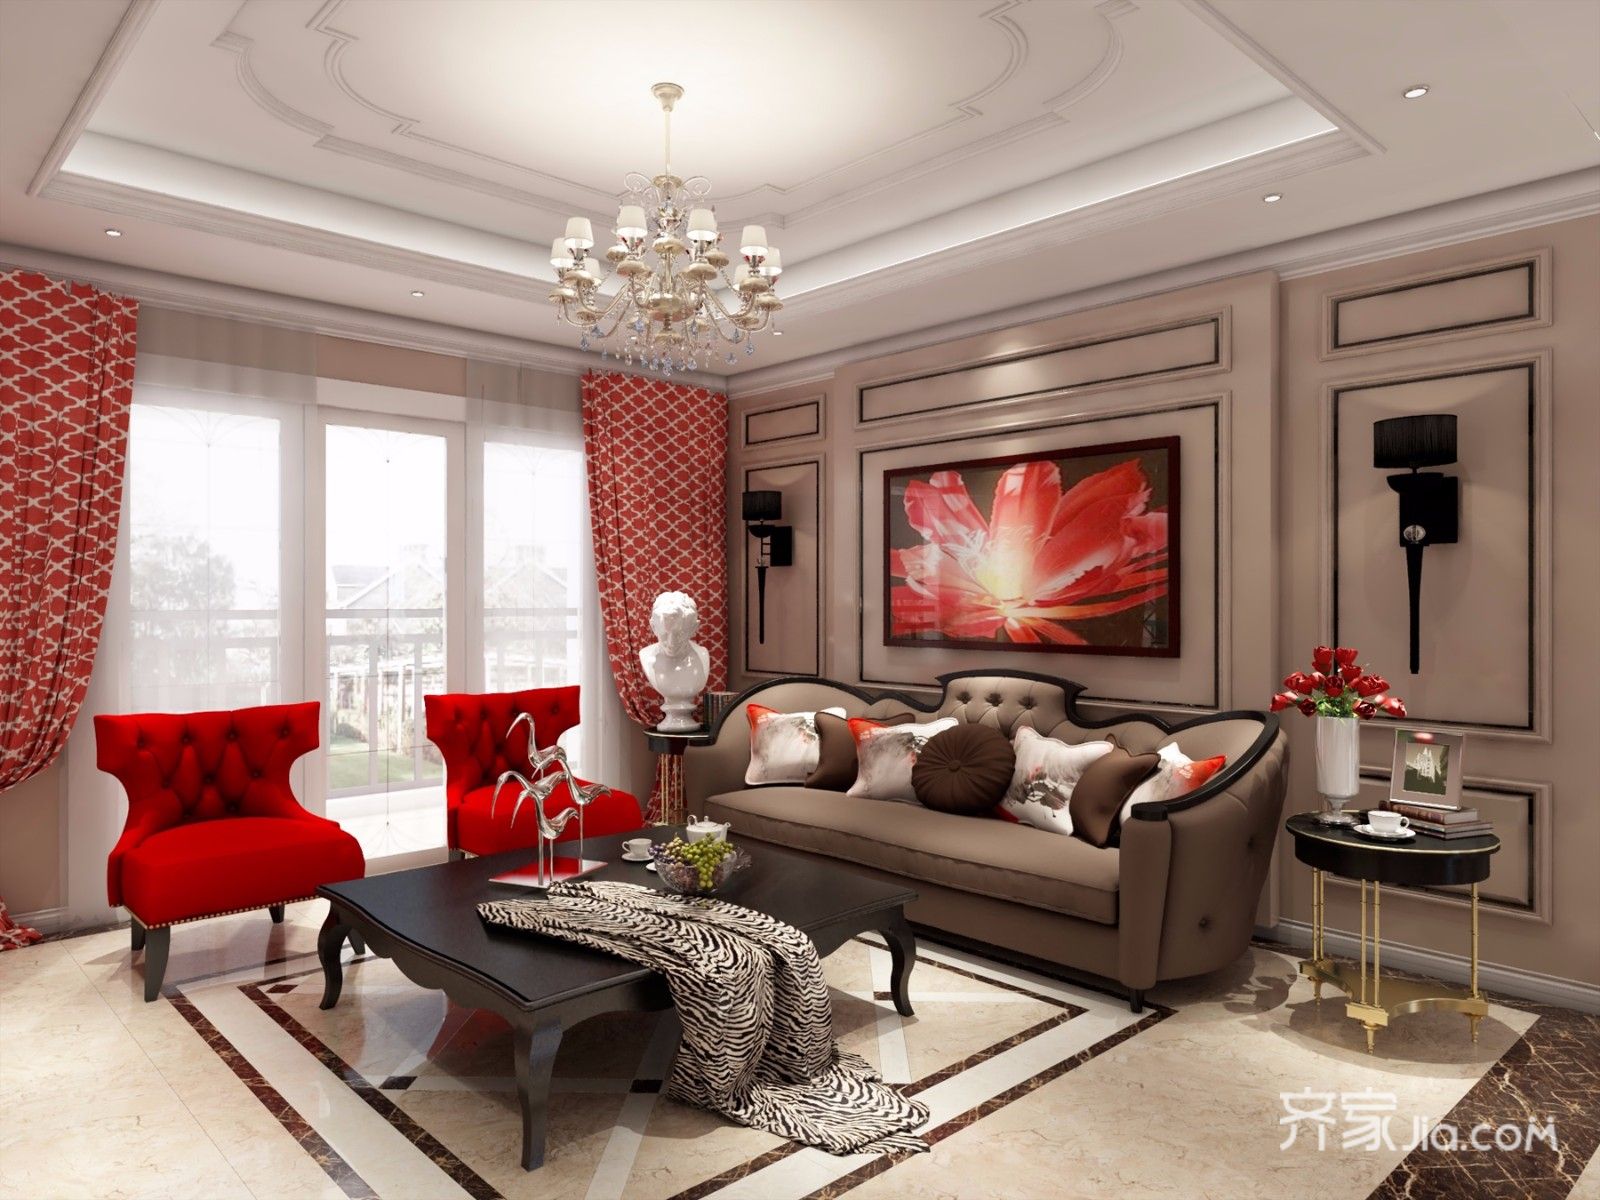 20万以上装修,二居室装修,130平米装修,美式风格,客厅,沙发背景墙,红色,装饰画,沙发,窗帘